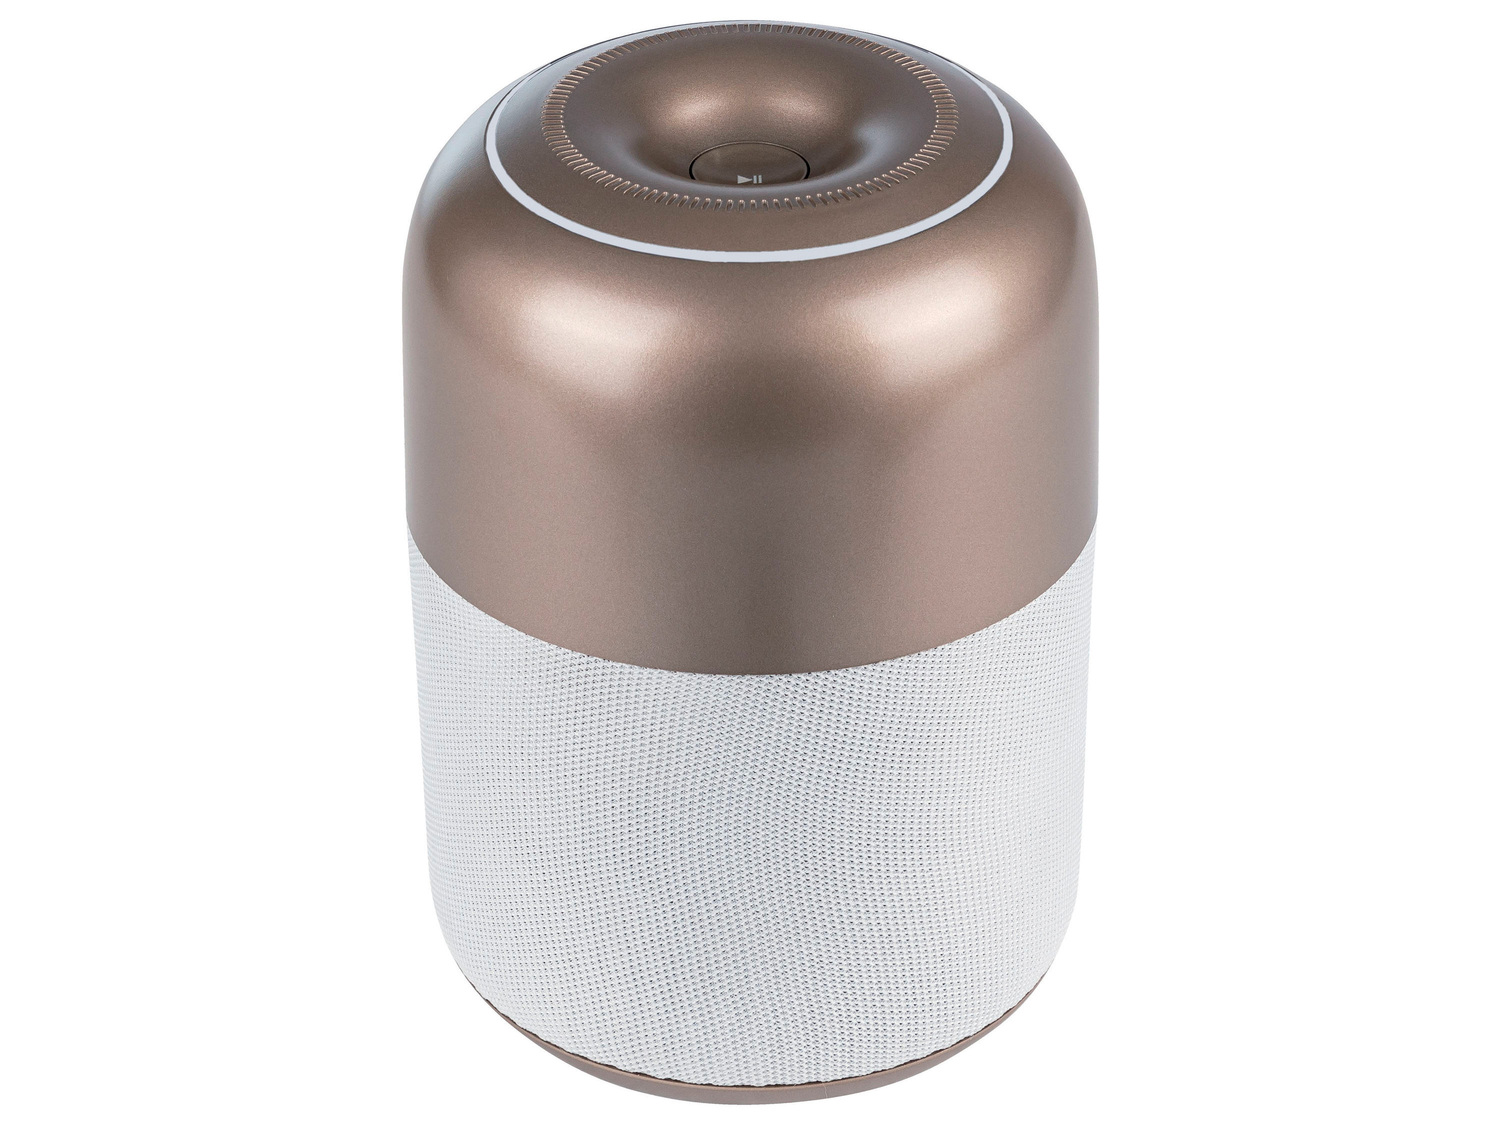 Głośnik Bluetooth® Silvercrest, cena 69,00 PLN 
- różne wzory
- do 7 h słuchania ...